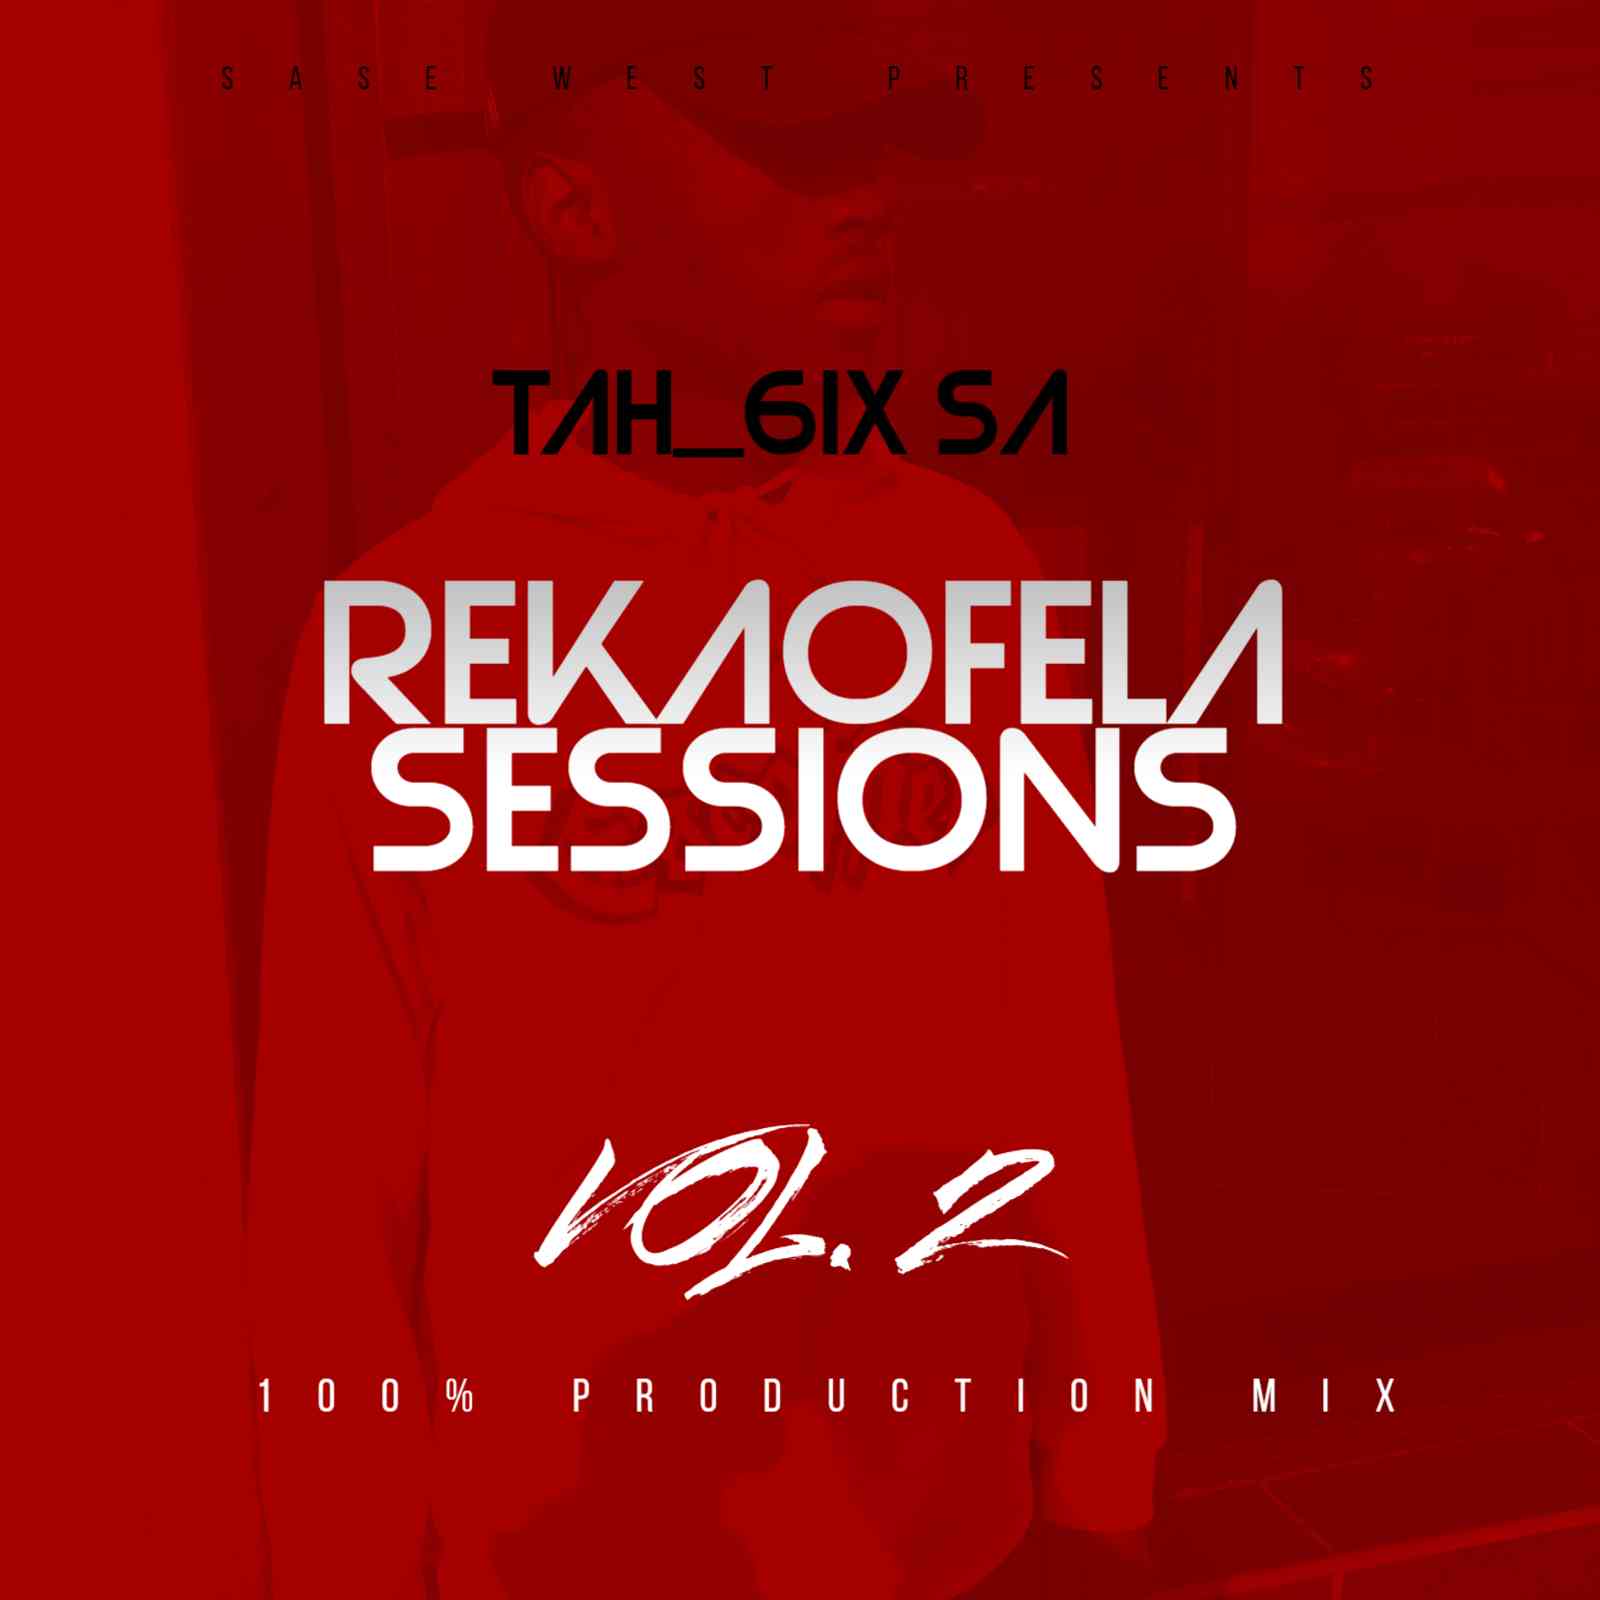 Tah 6ix SA Reakaofela Sessions Vol.2 